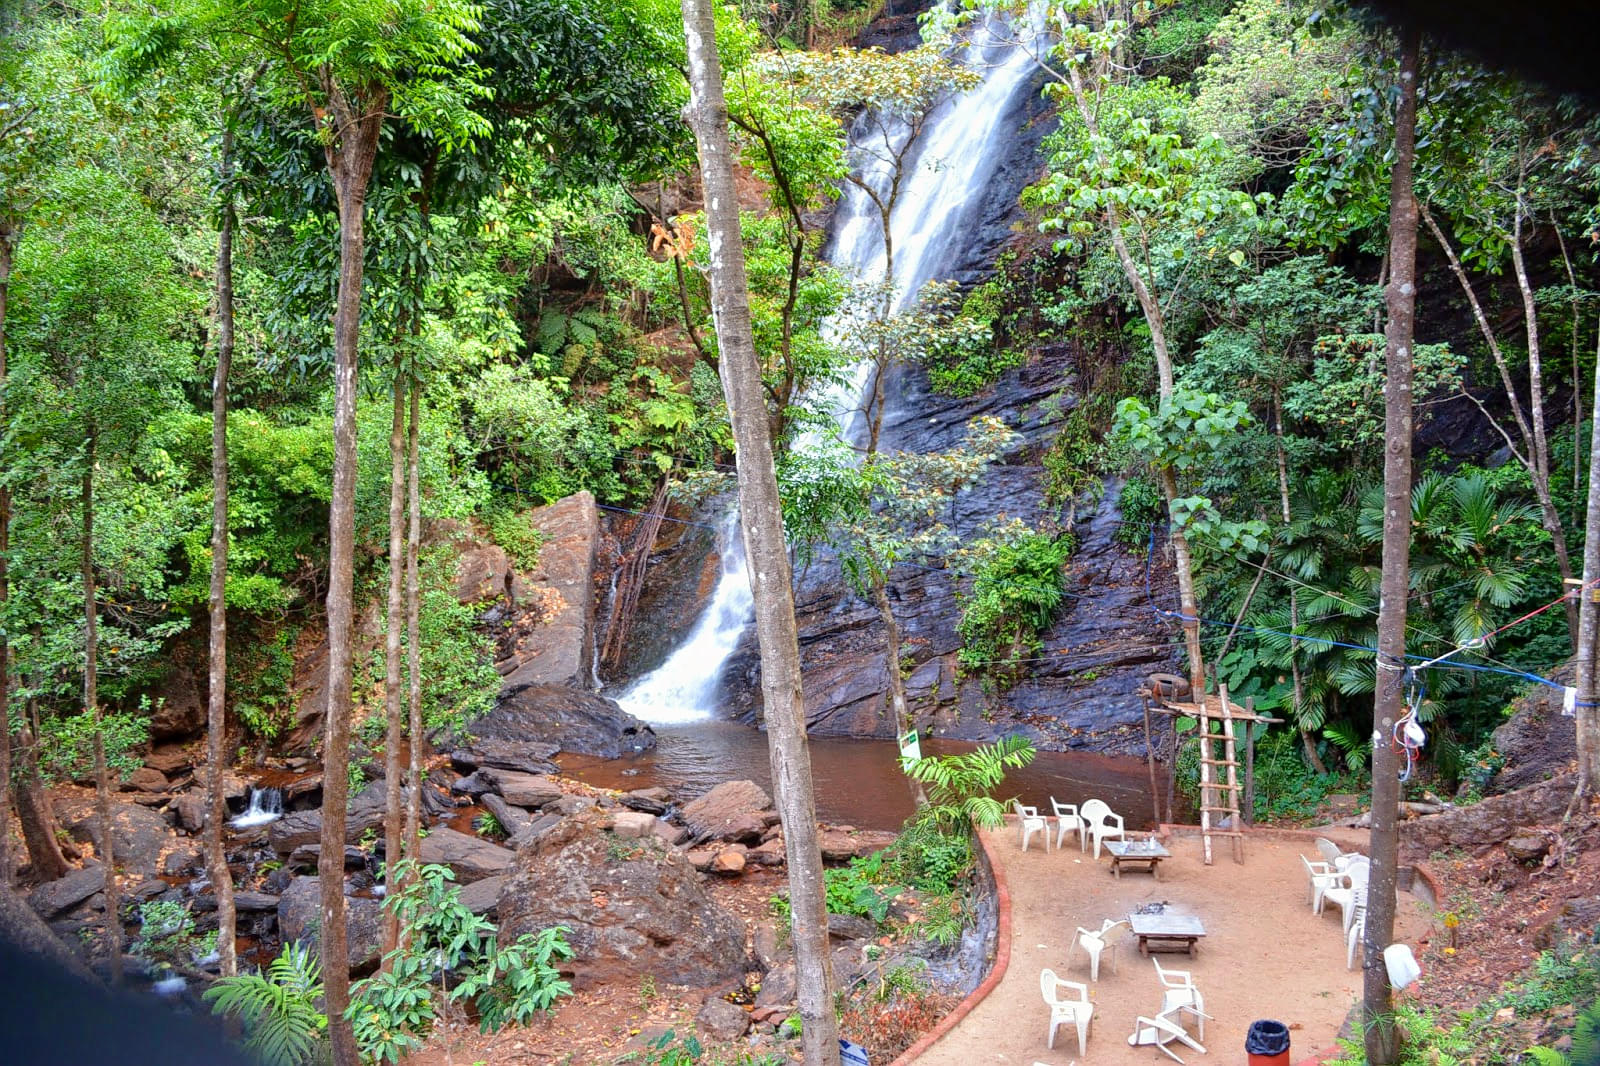 Jhari Falls Overview